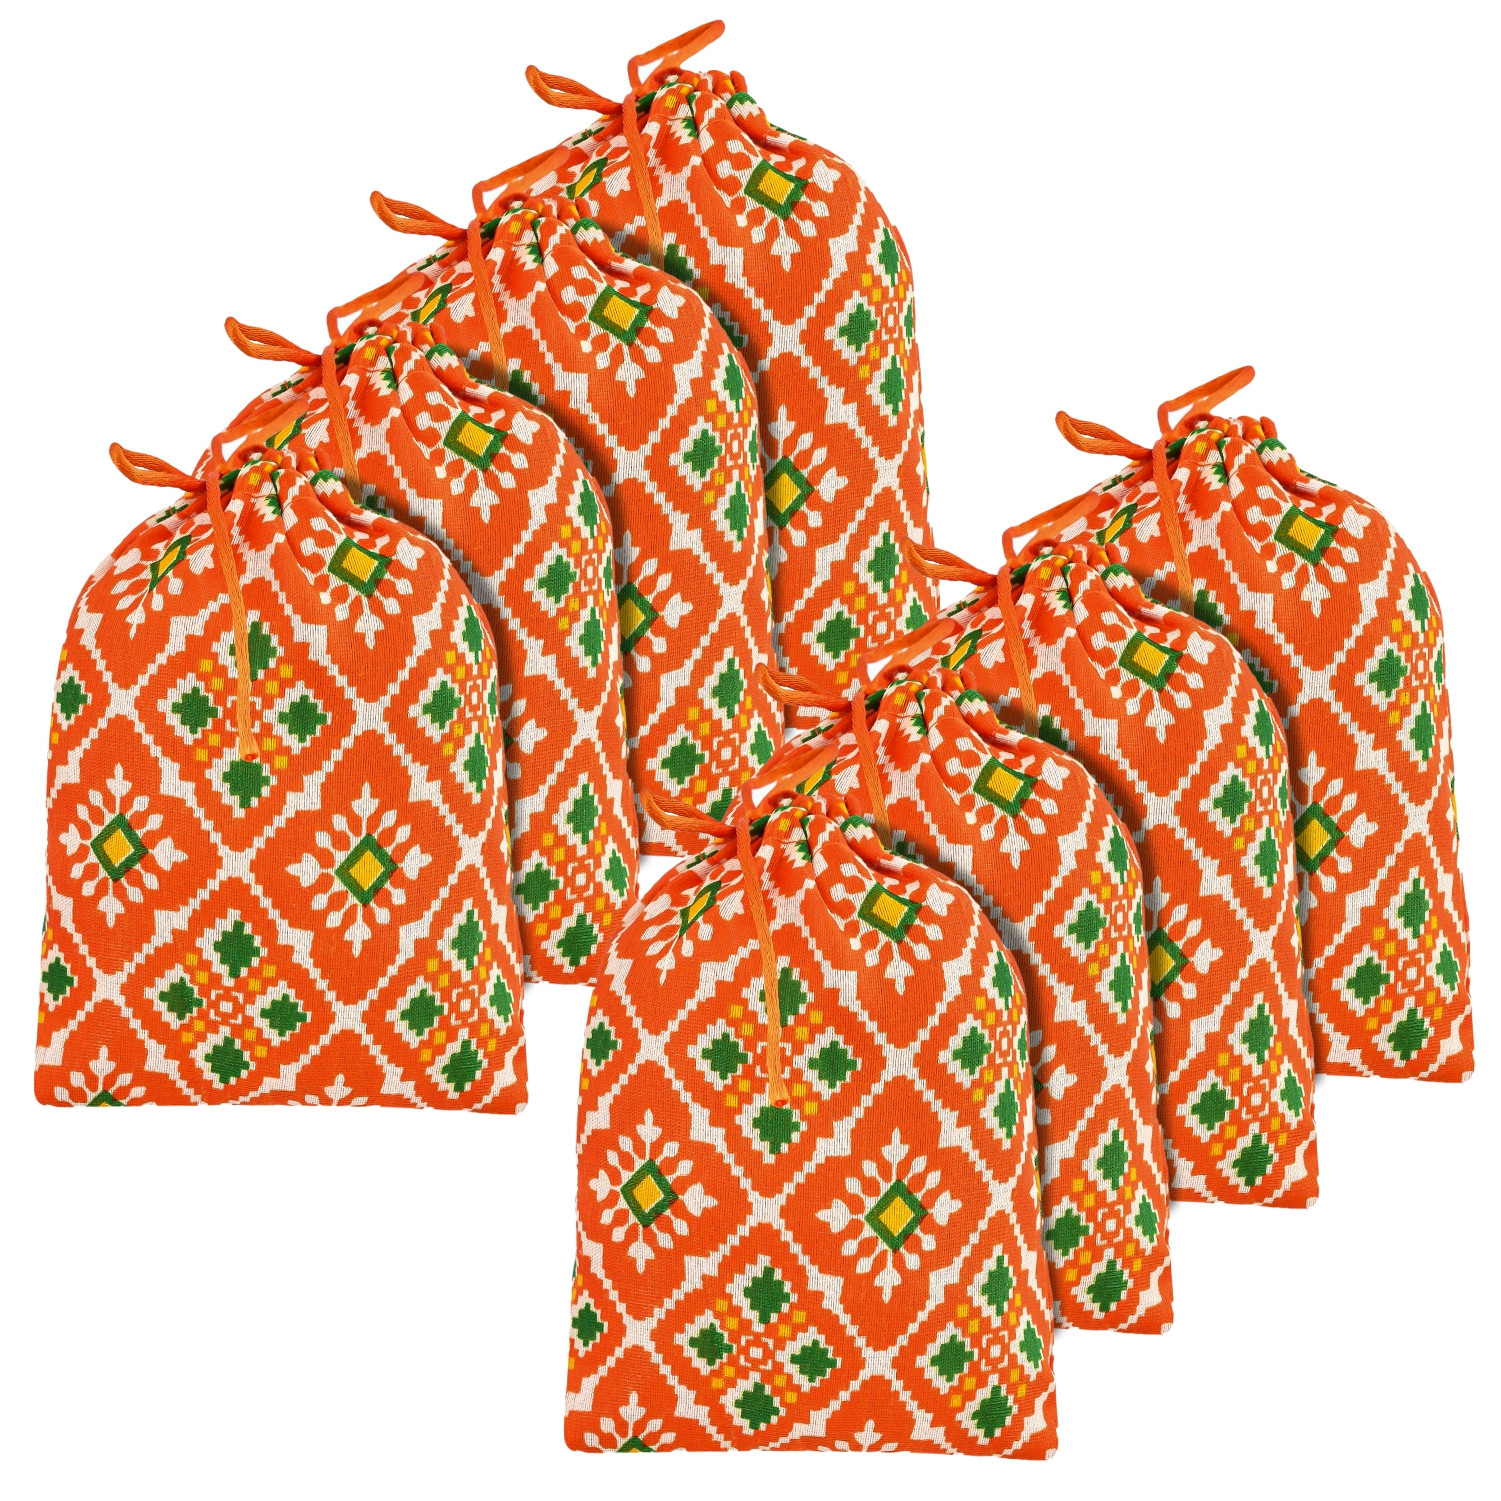 Kuber Industries Potli | Silk Wedding Potli | Drawstring Closure Potli | Wallet Potli | Christmas Gift Potli | Baby Shower Potli | Small-Patola-Print Potli | 5x7 Inch |Orange